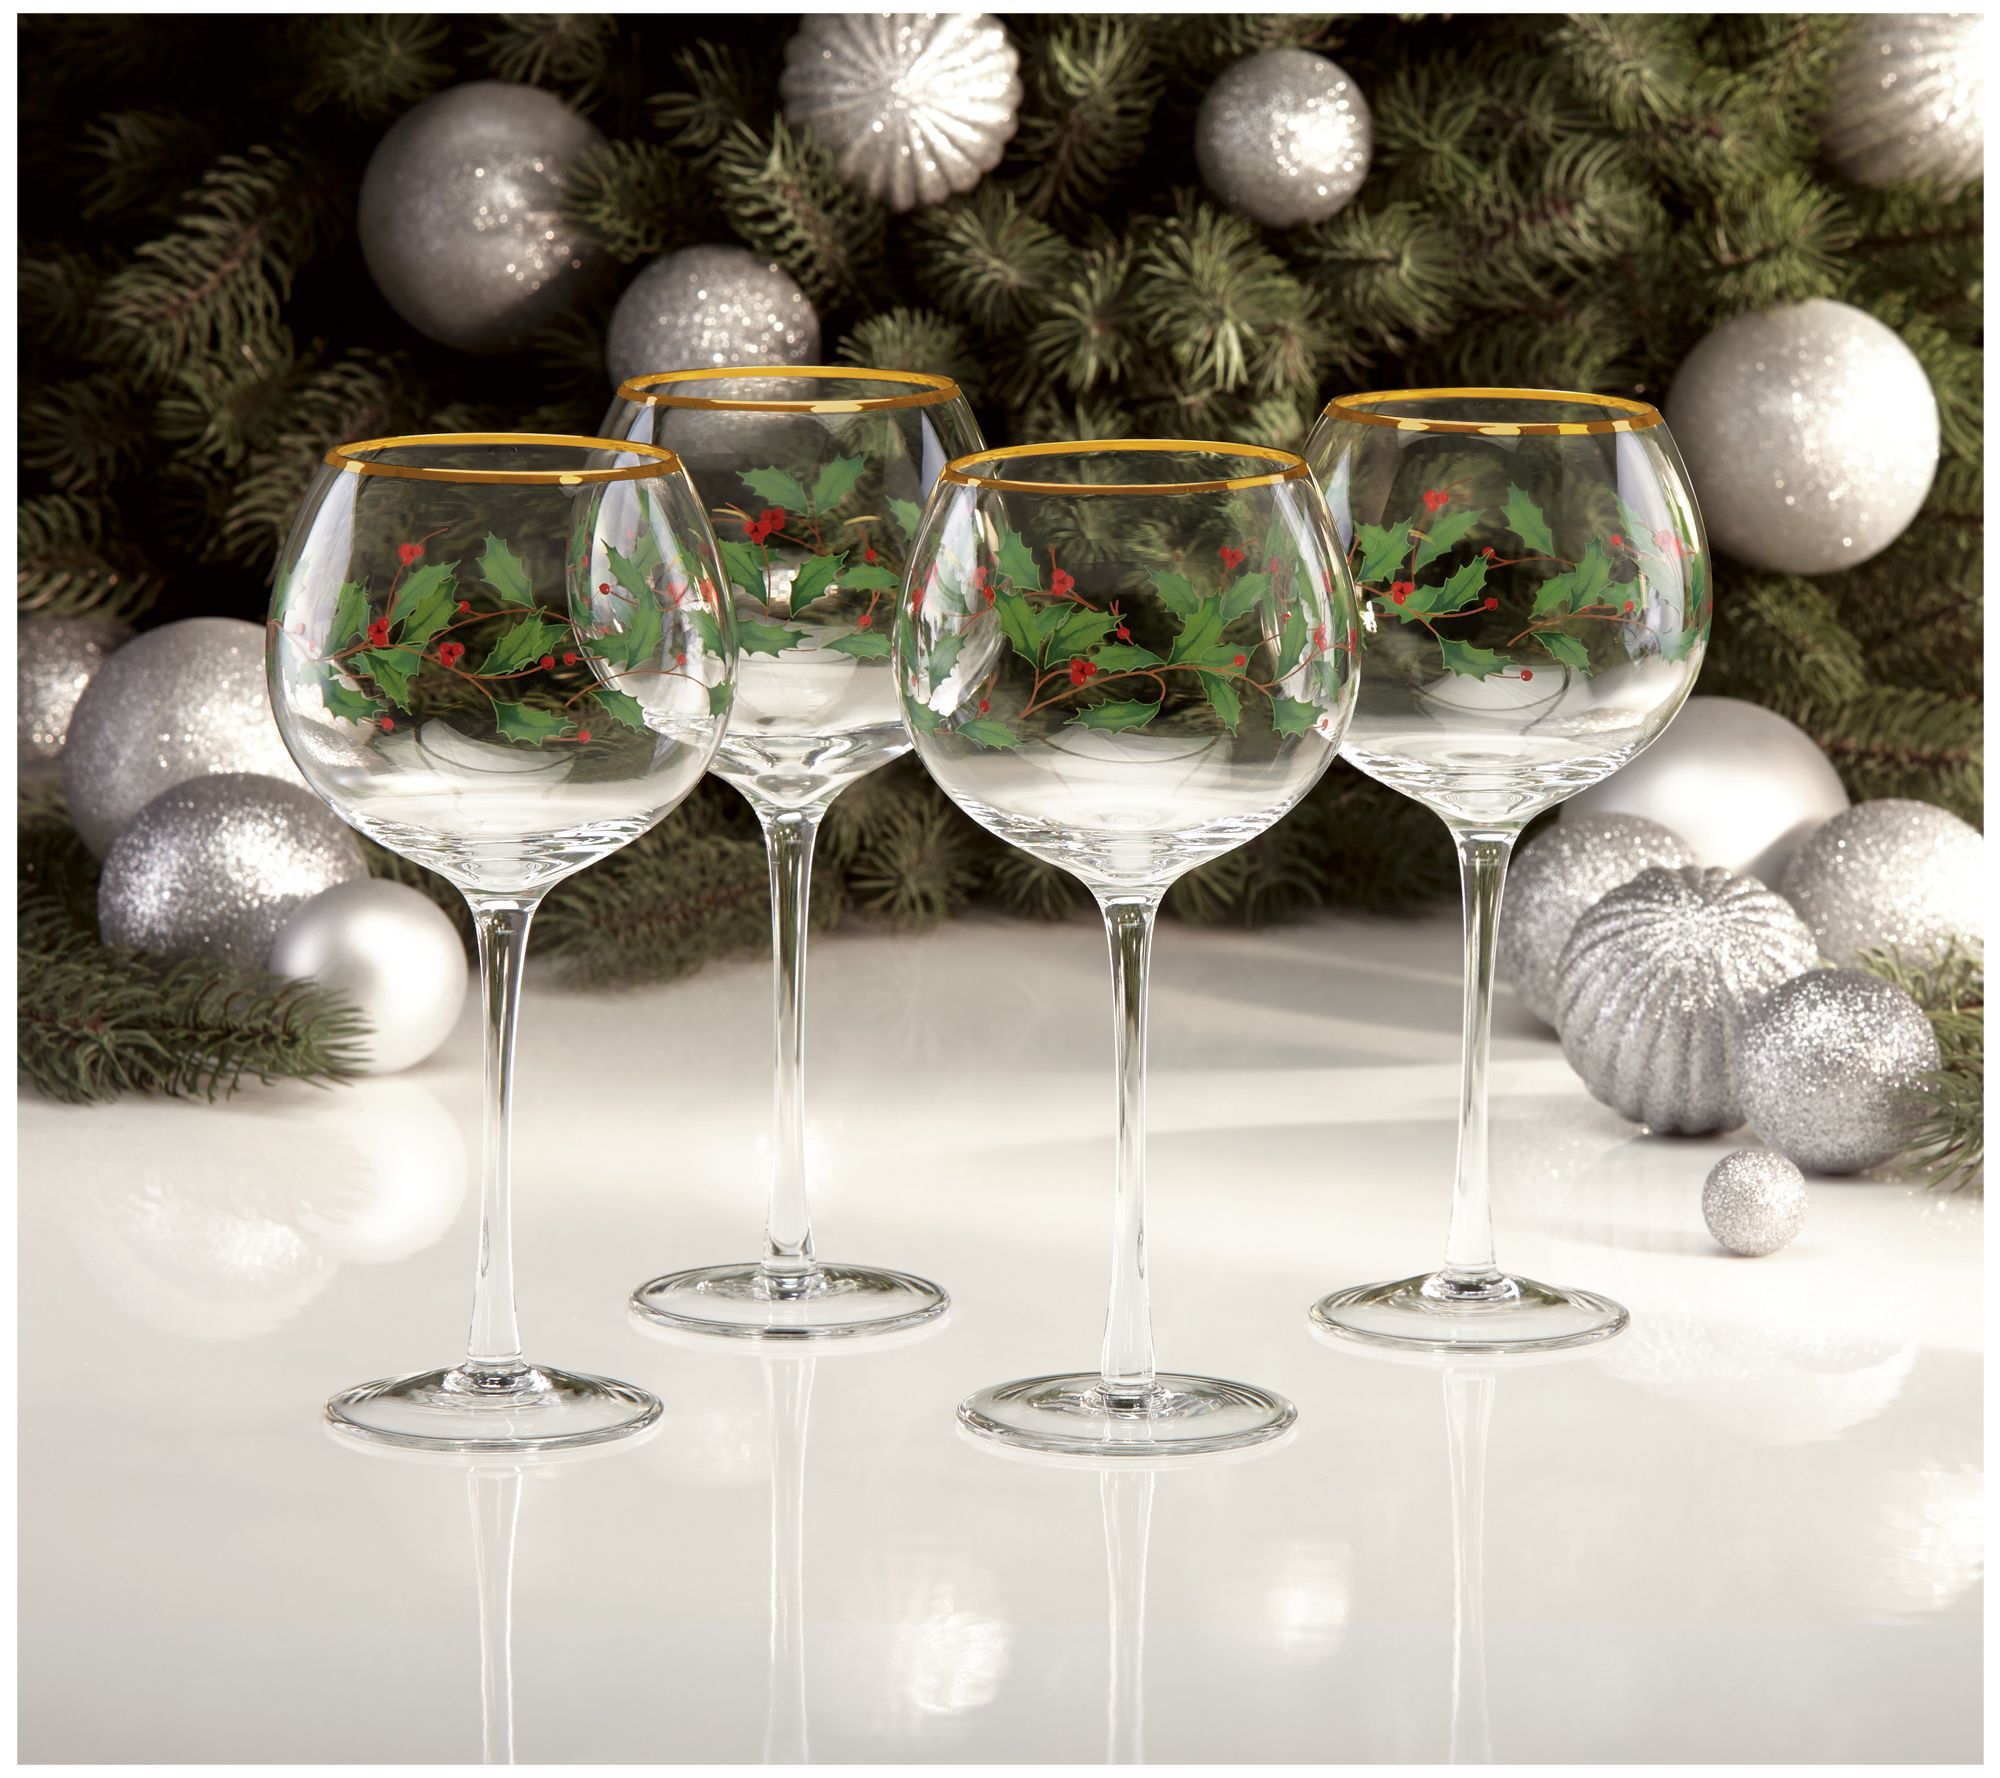 Festive Fall Wine Glasses ~ Set of 4